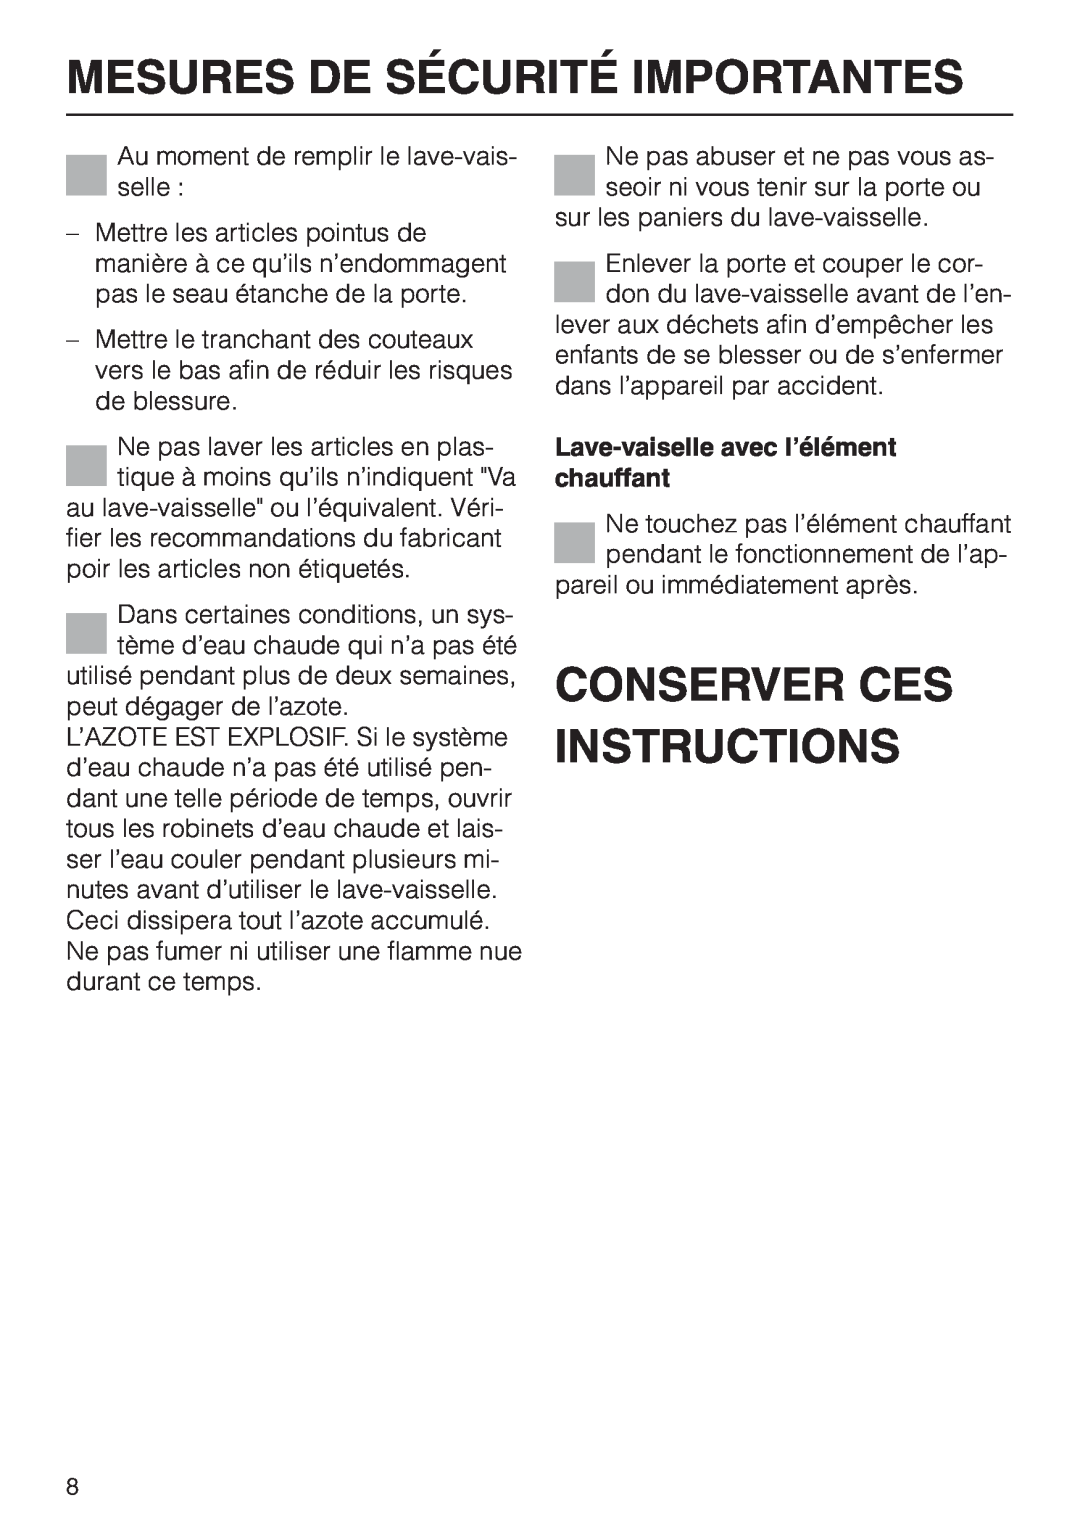 Miele G858SCVI manual Conserver Ces Instructions, Mesures De Sécurité Importantes, Lave-vaiselleavec l’élément chauffant 